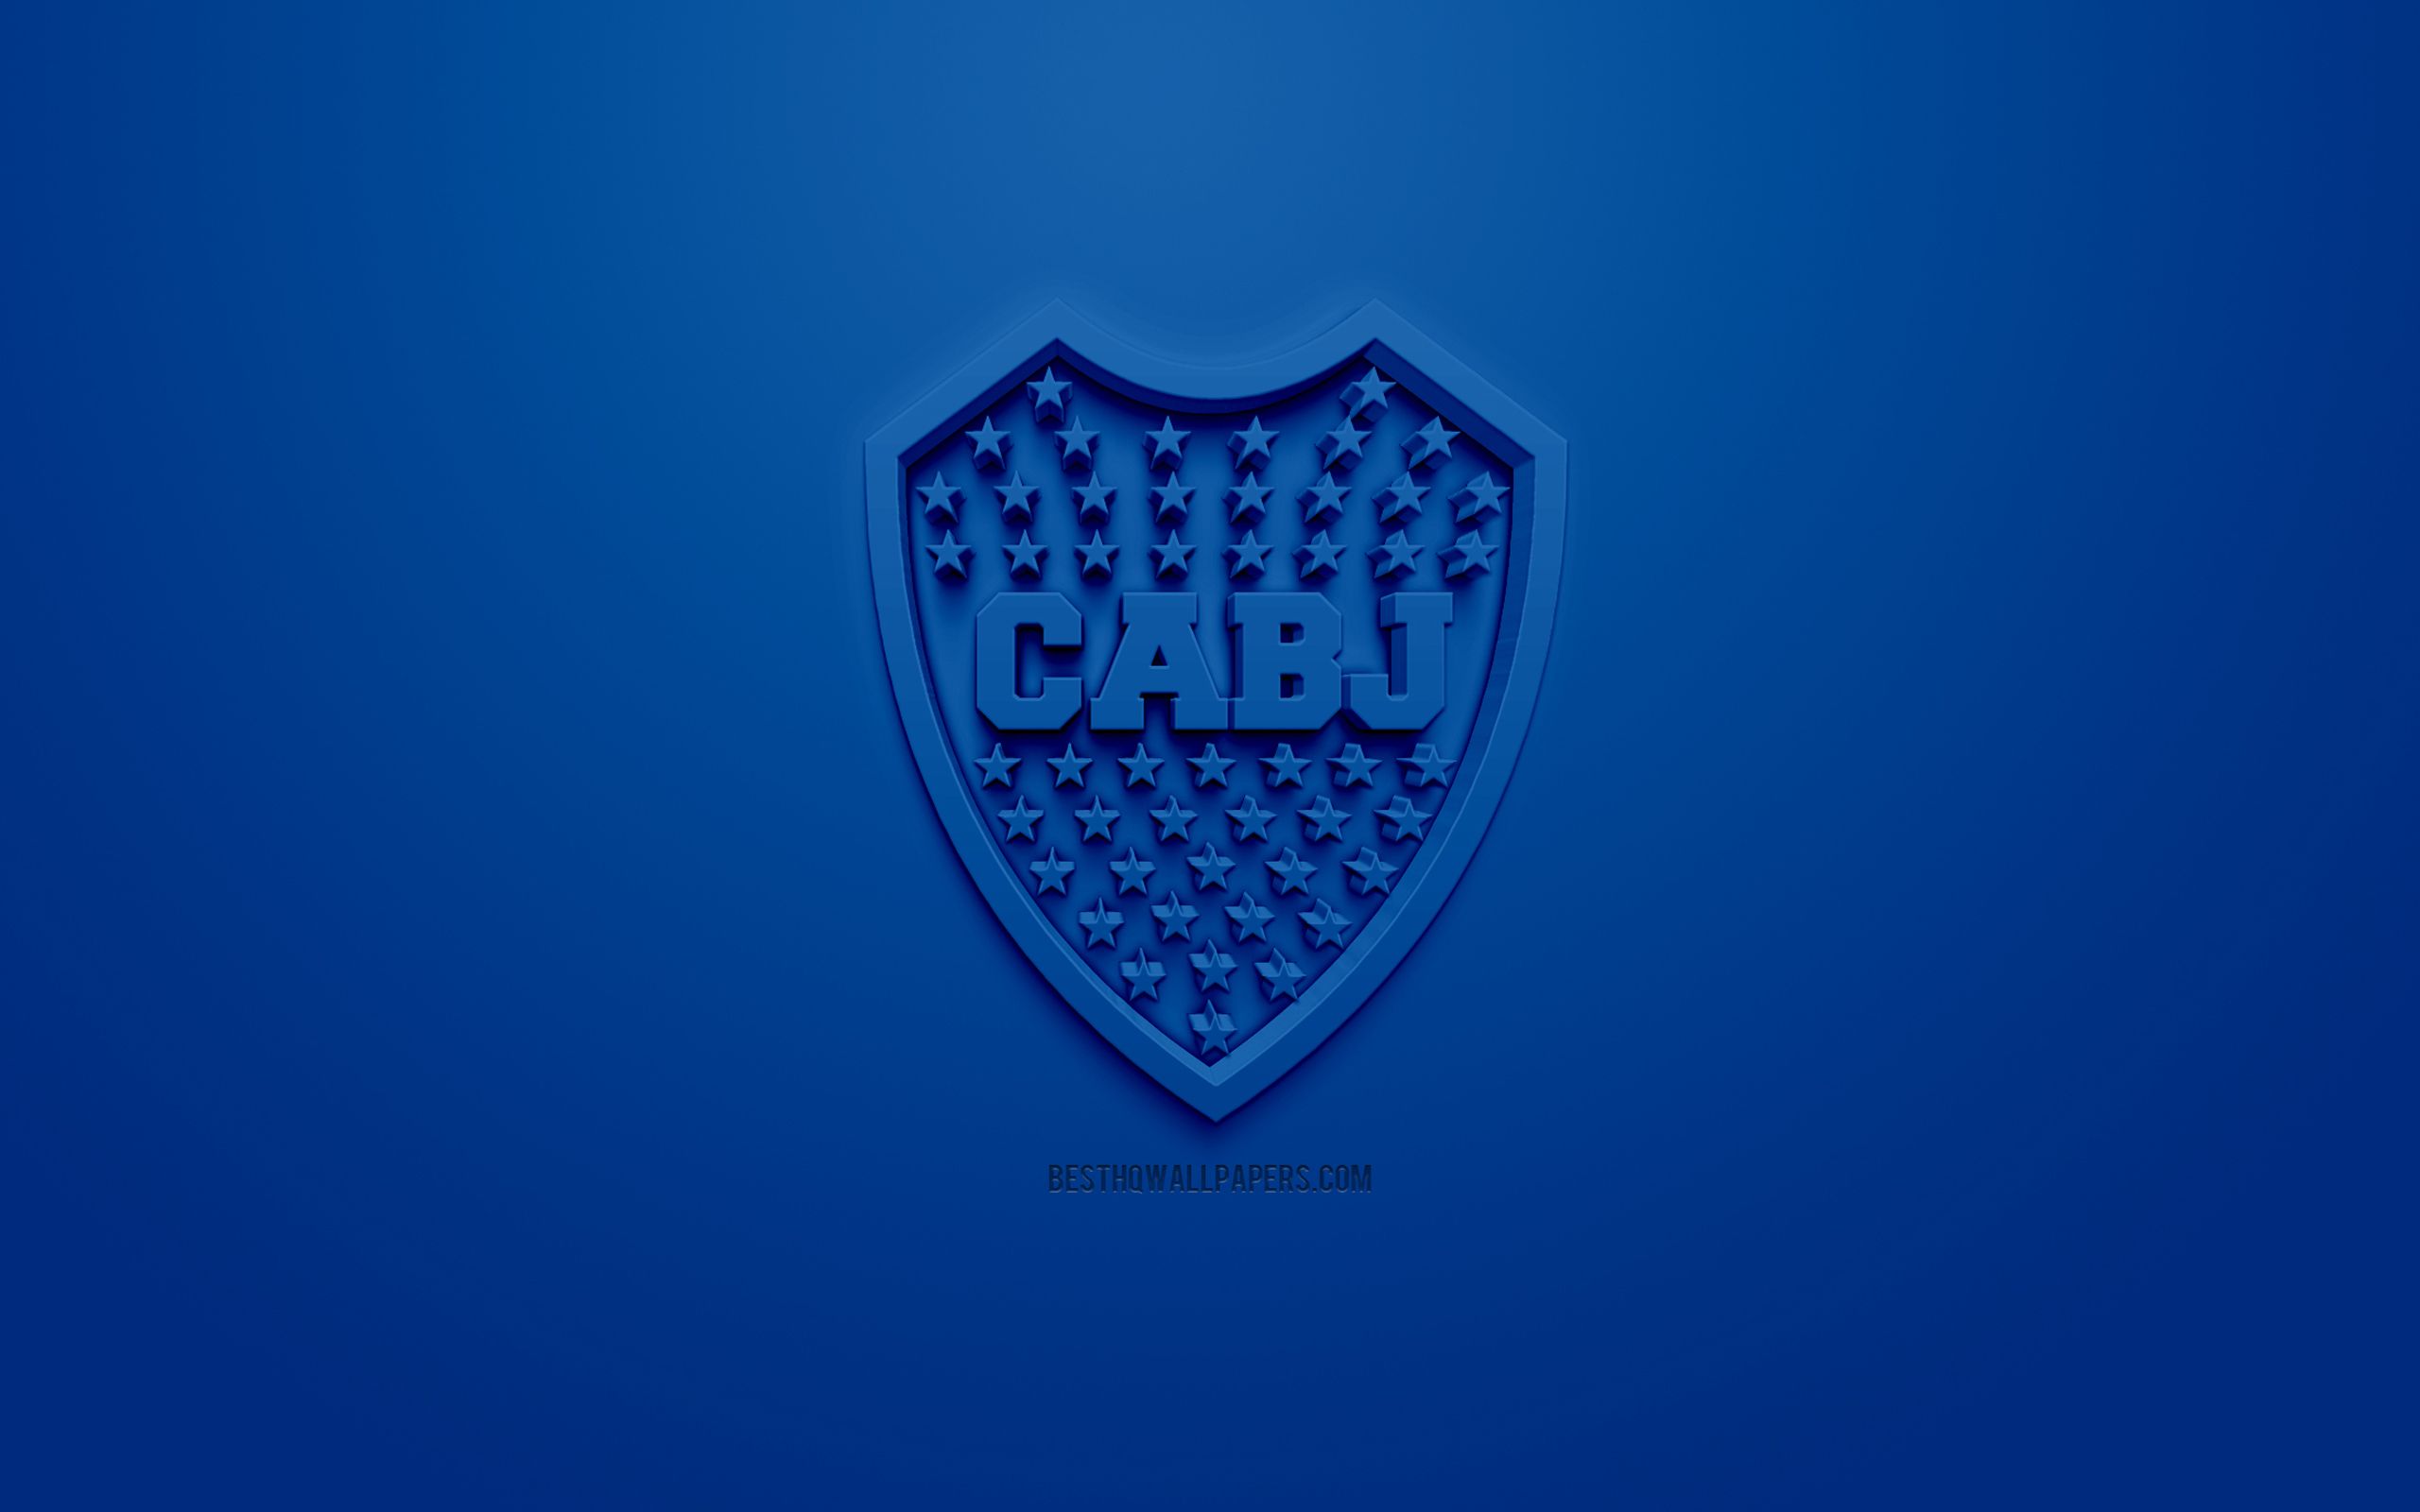 Fondos de pantalla del Boca Juniors - FondosMil